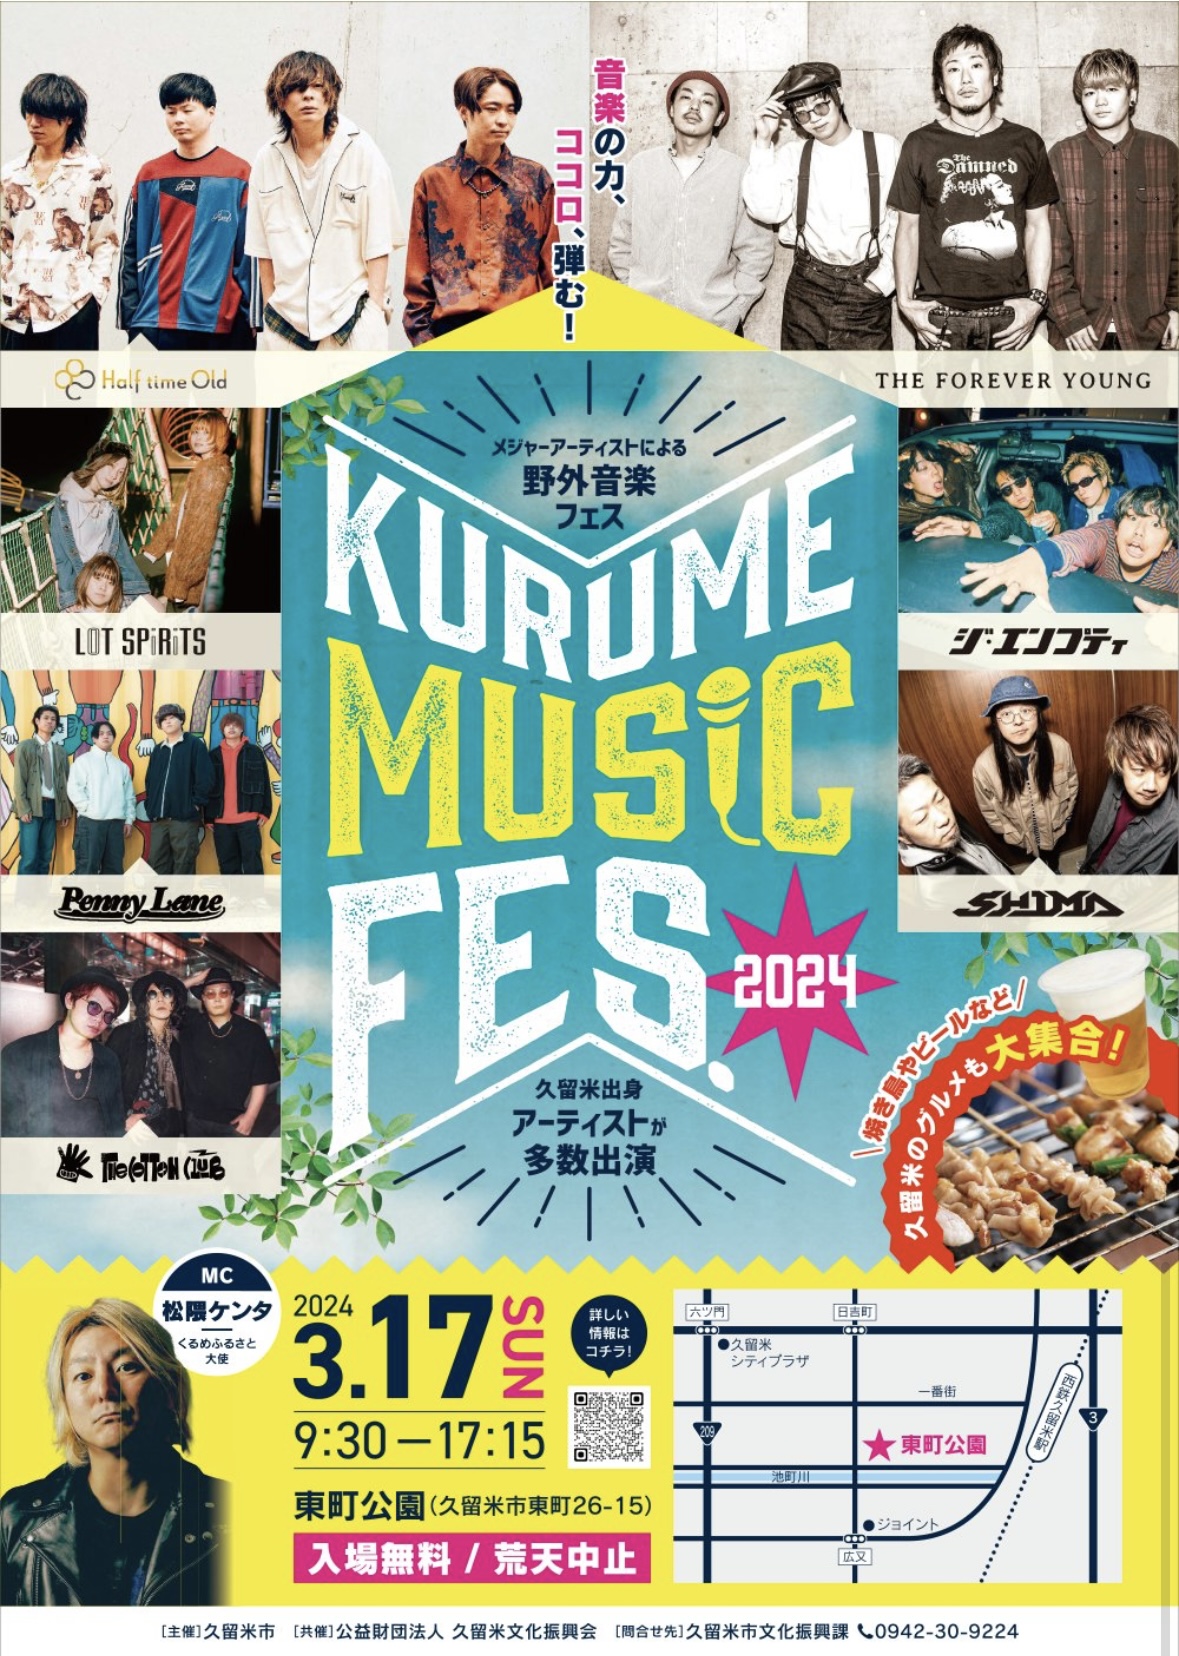 2024年KURUME MUSIC FES.2024